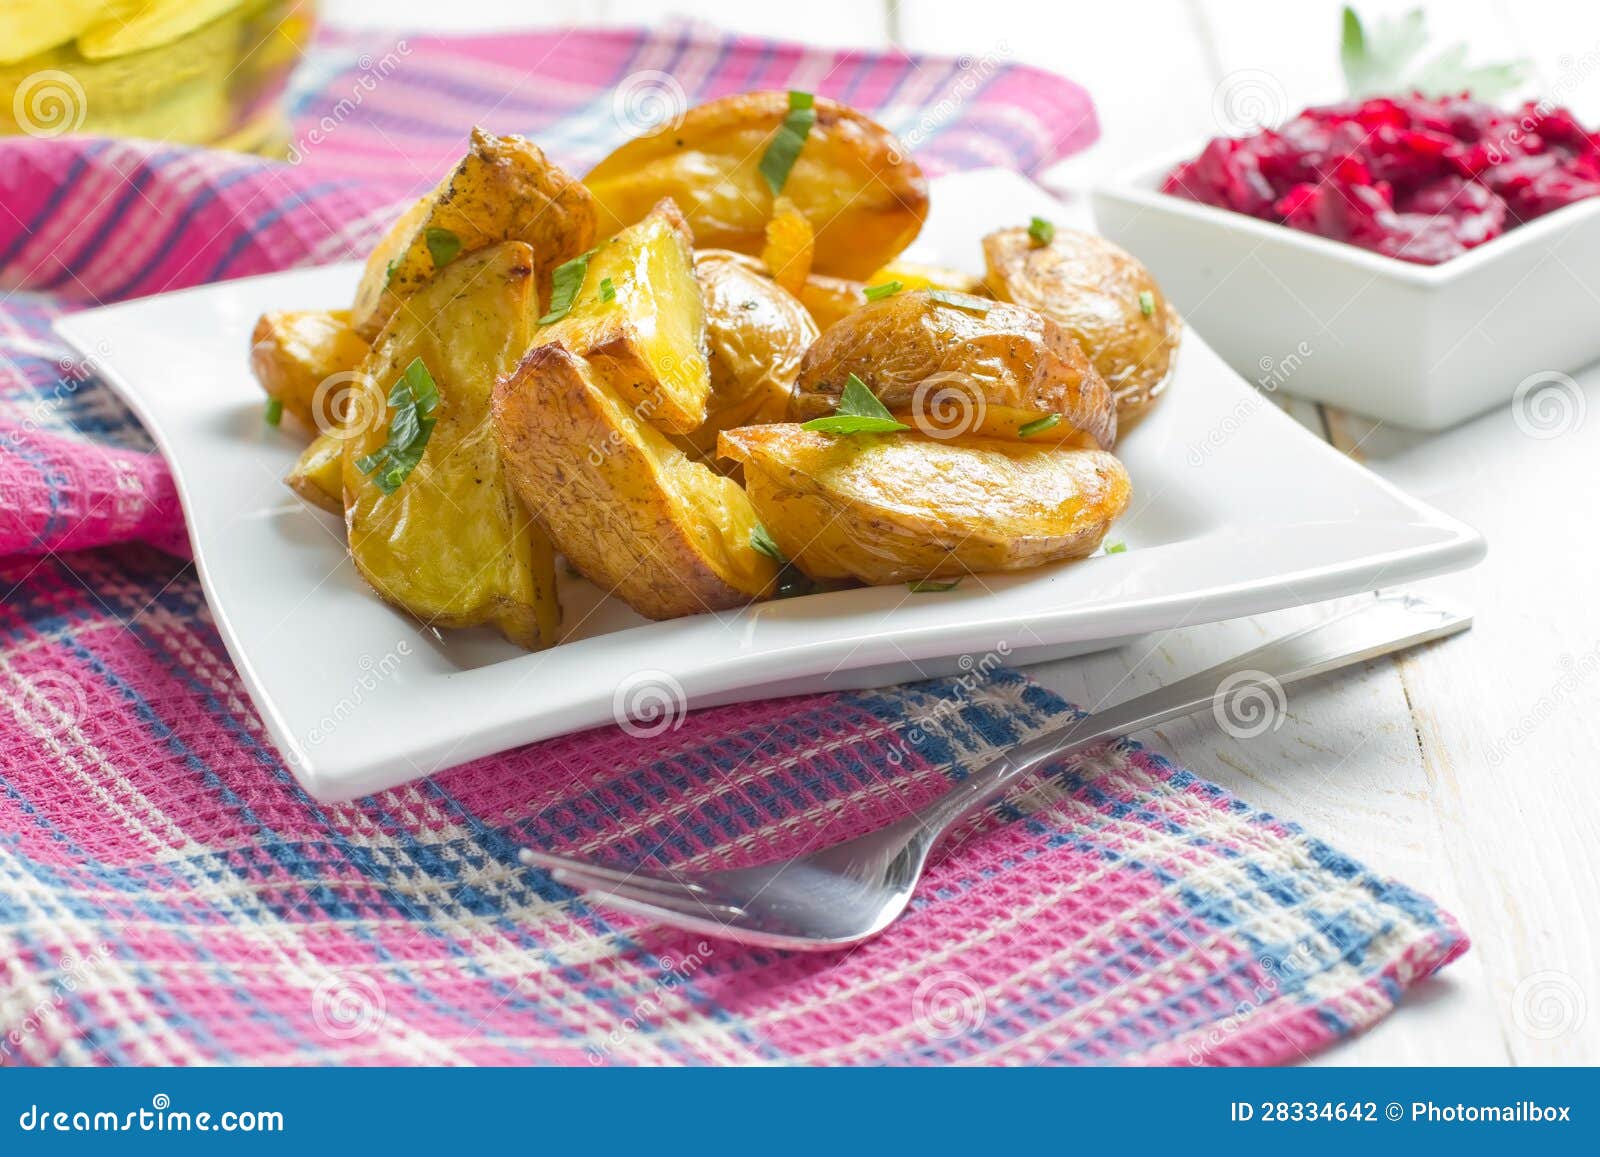 果皮土豆和大蒜 库存图片. 图片 包括有 新鲜, 油煎, 夹克, 准备, 迷迭香, 没人, 健康, 有机 - 39883141